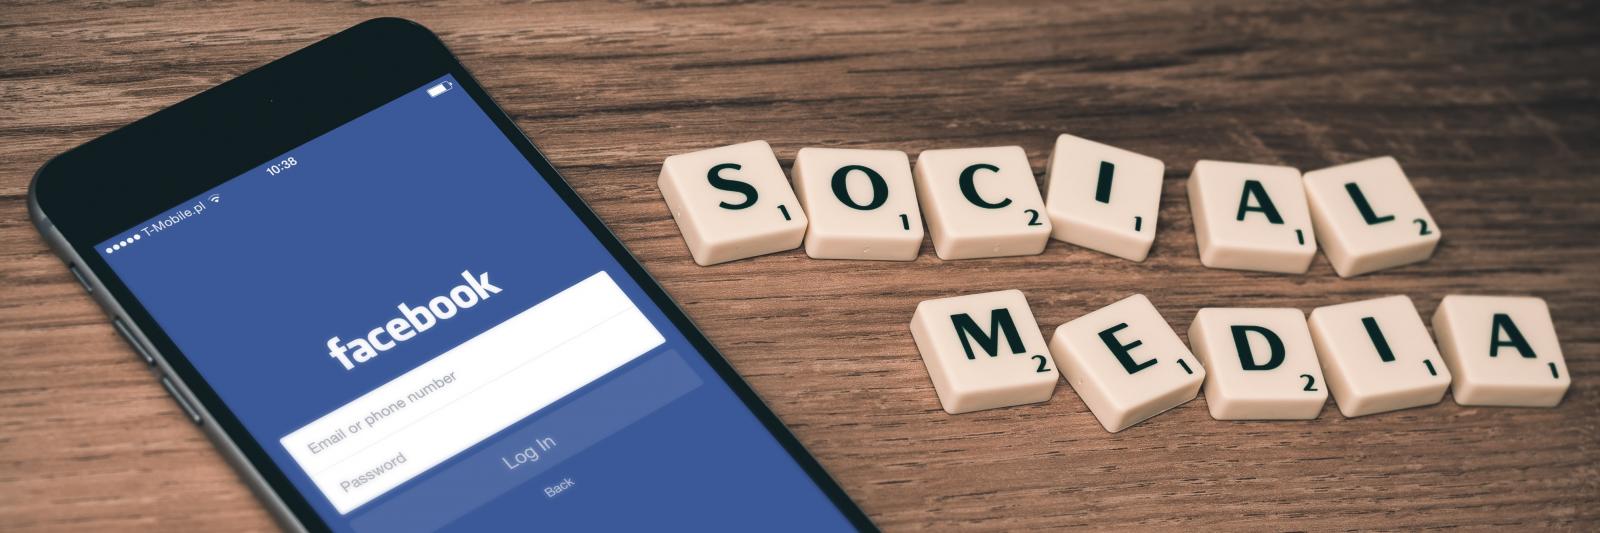 Telefono con App di Facebook aperta, accanto la scritta "social media" creata con le tessere del gioco "Scarabeo"